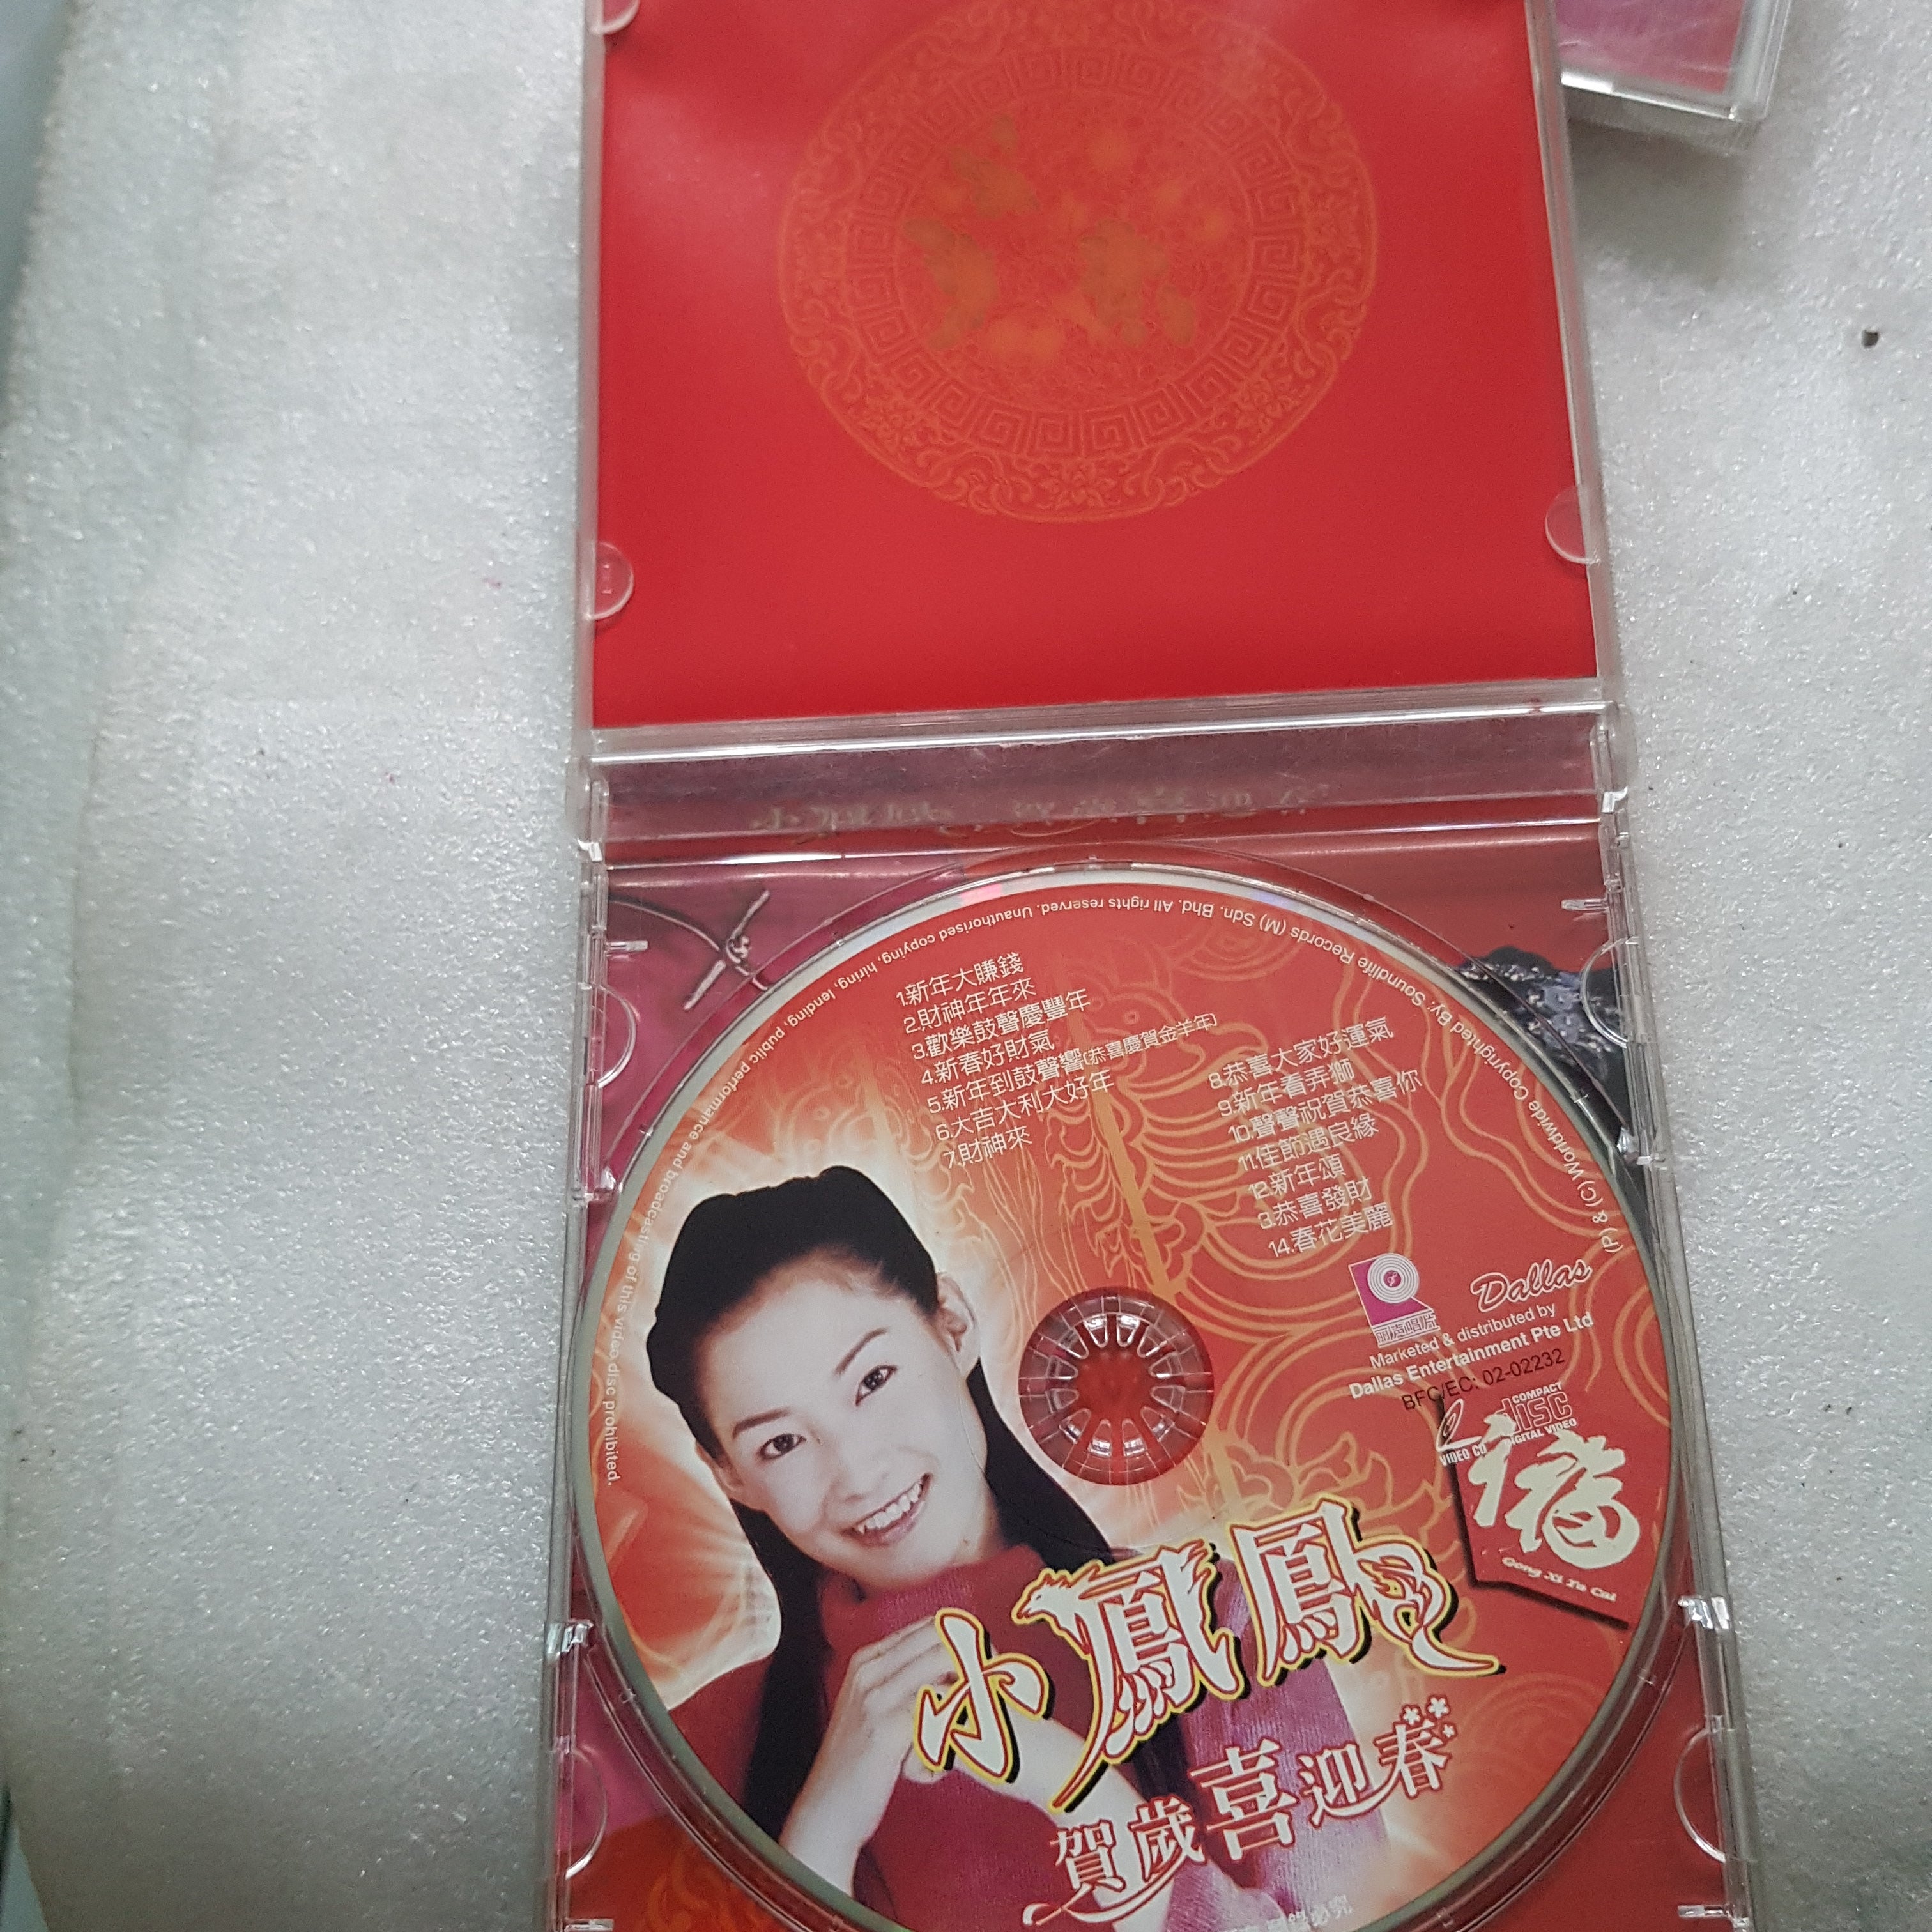 特別セーフ Kαin DVD + CD Preview song New re;born 邦楽 